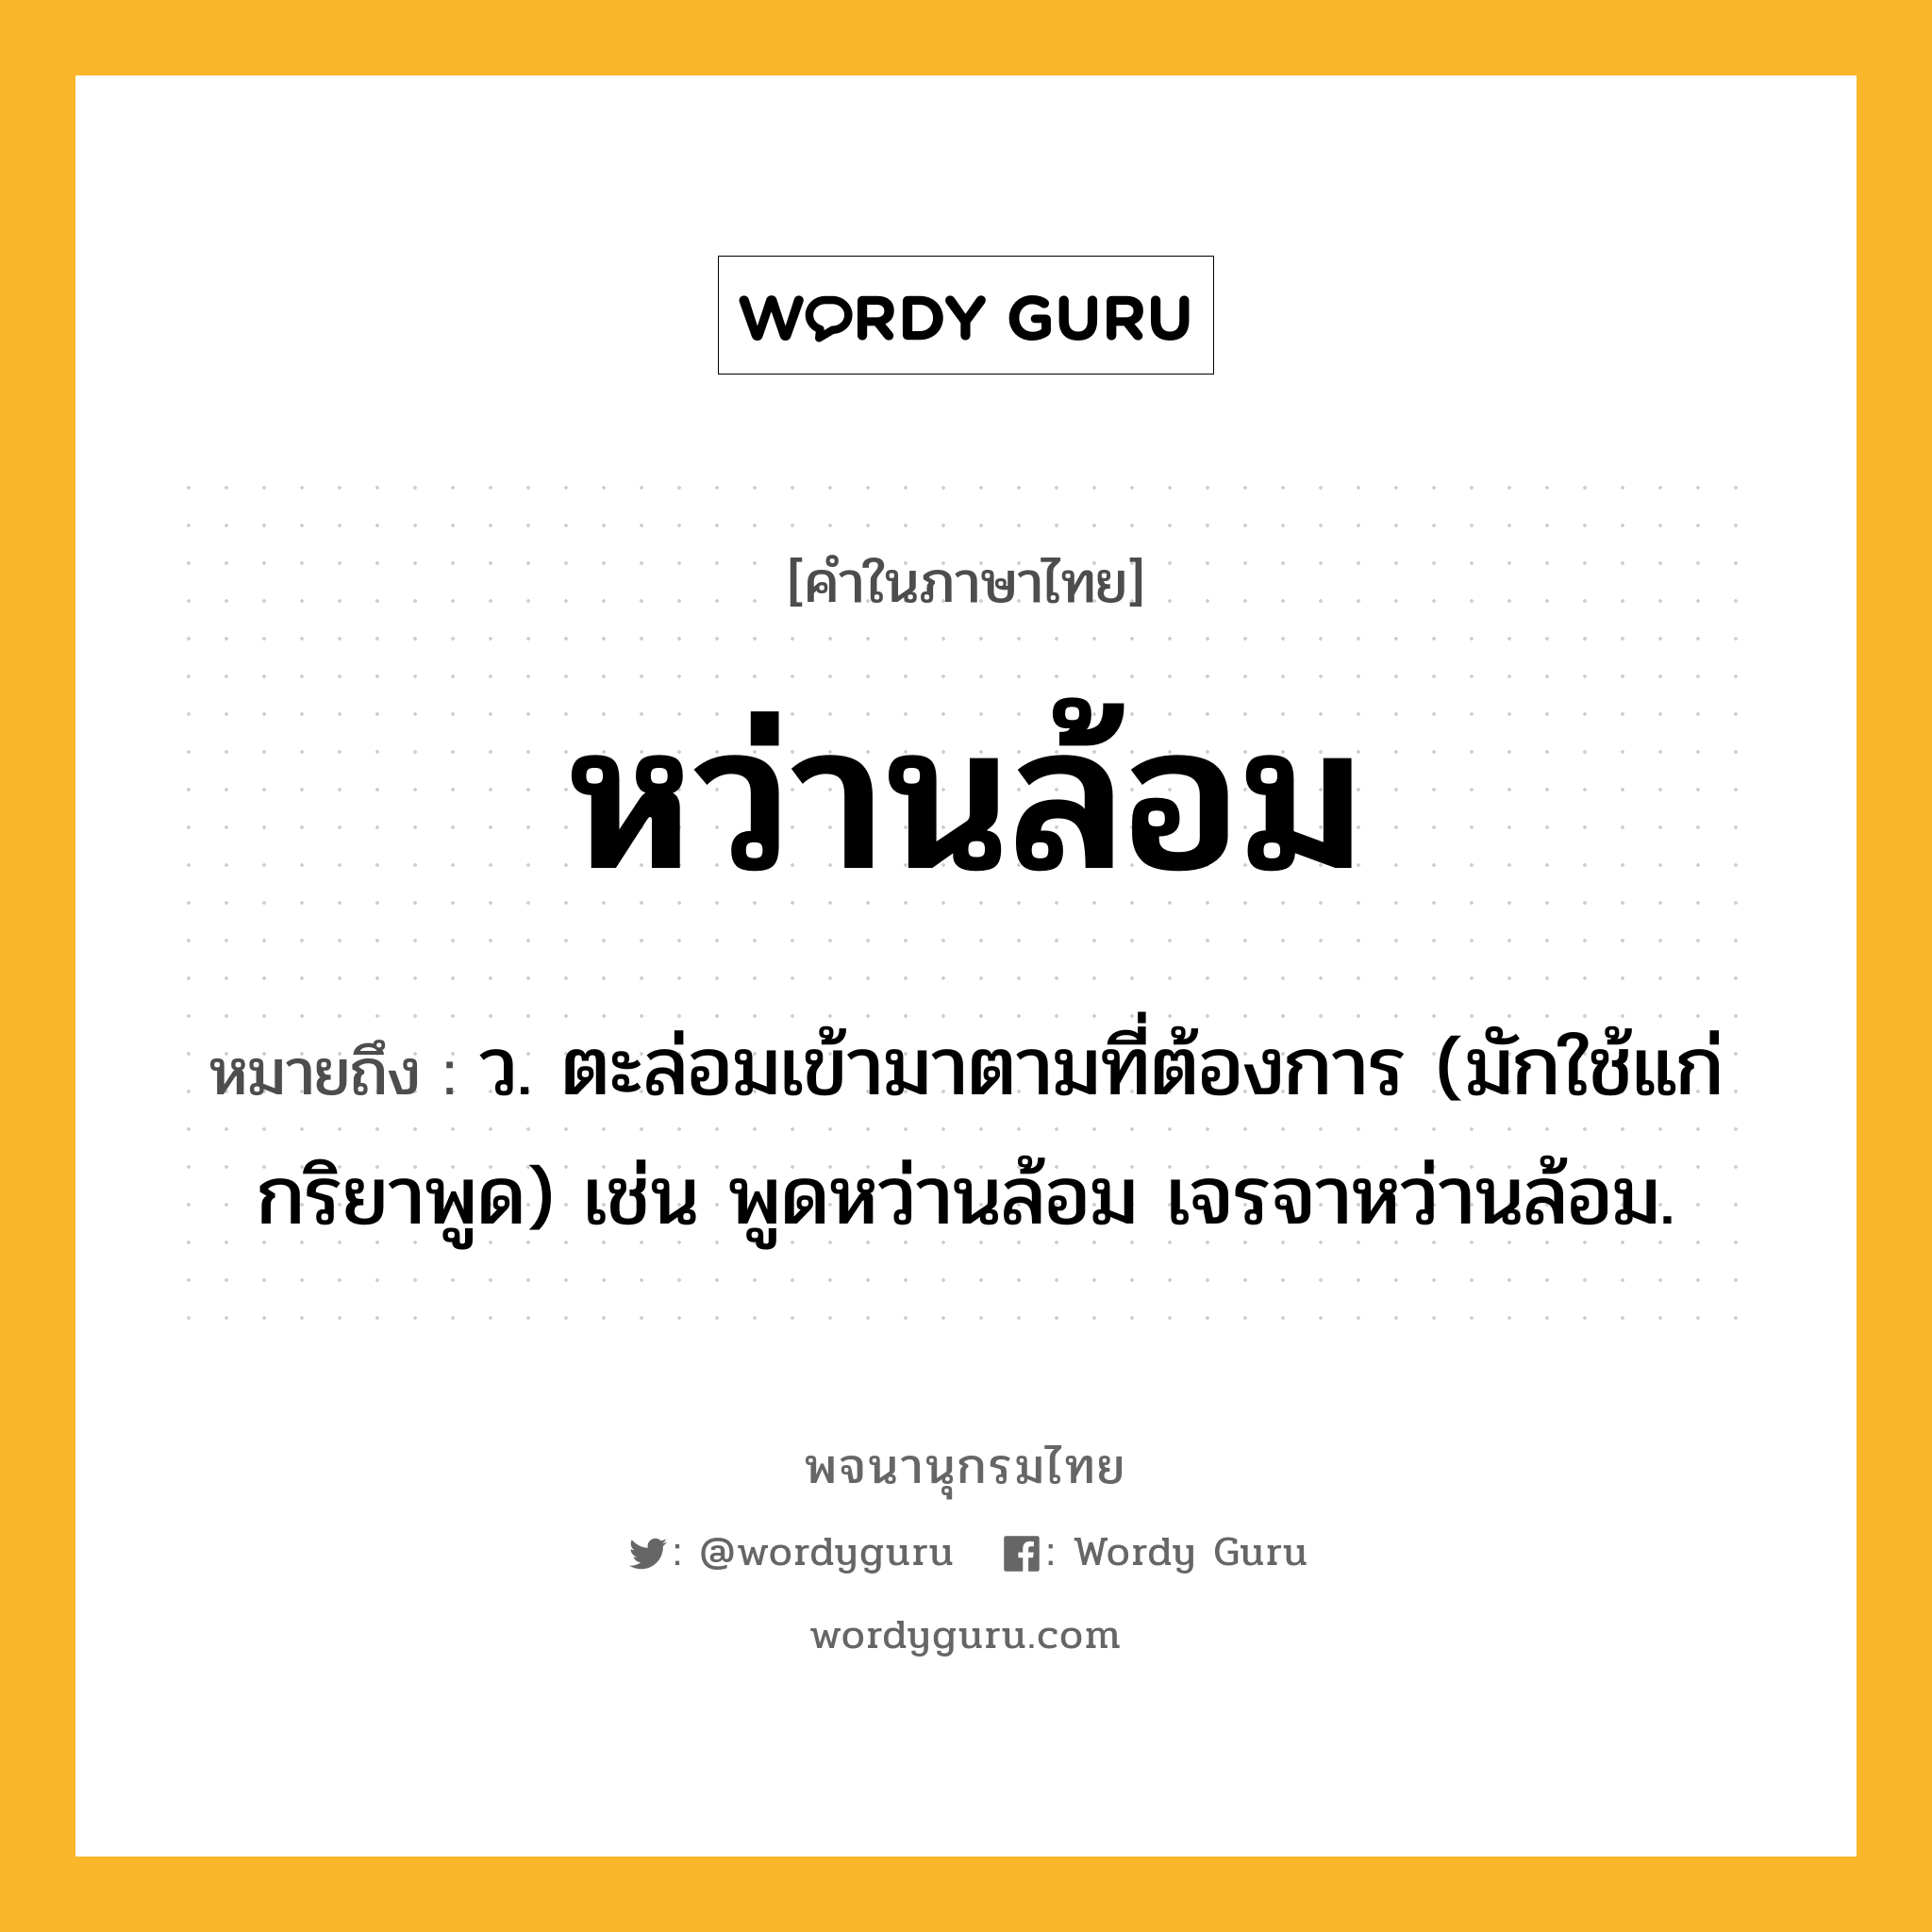 หว่านล้อม หมายถึงอะไร?, คำในภาษาไทย หว่านล้อม หมายถึง ว. ตะล่อมเข้ามาตามที่ต้องการ (มักใช้แก่กริยาพูด) เช่น พูดหว่านล้อม เจรจาหว่านล้อม.